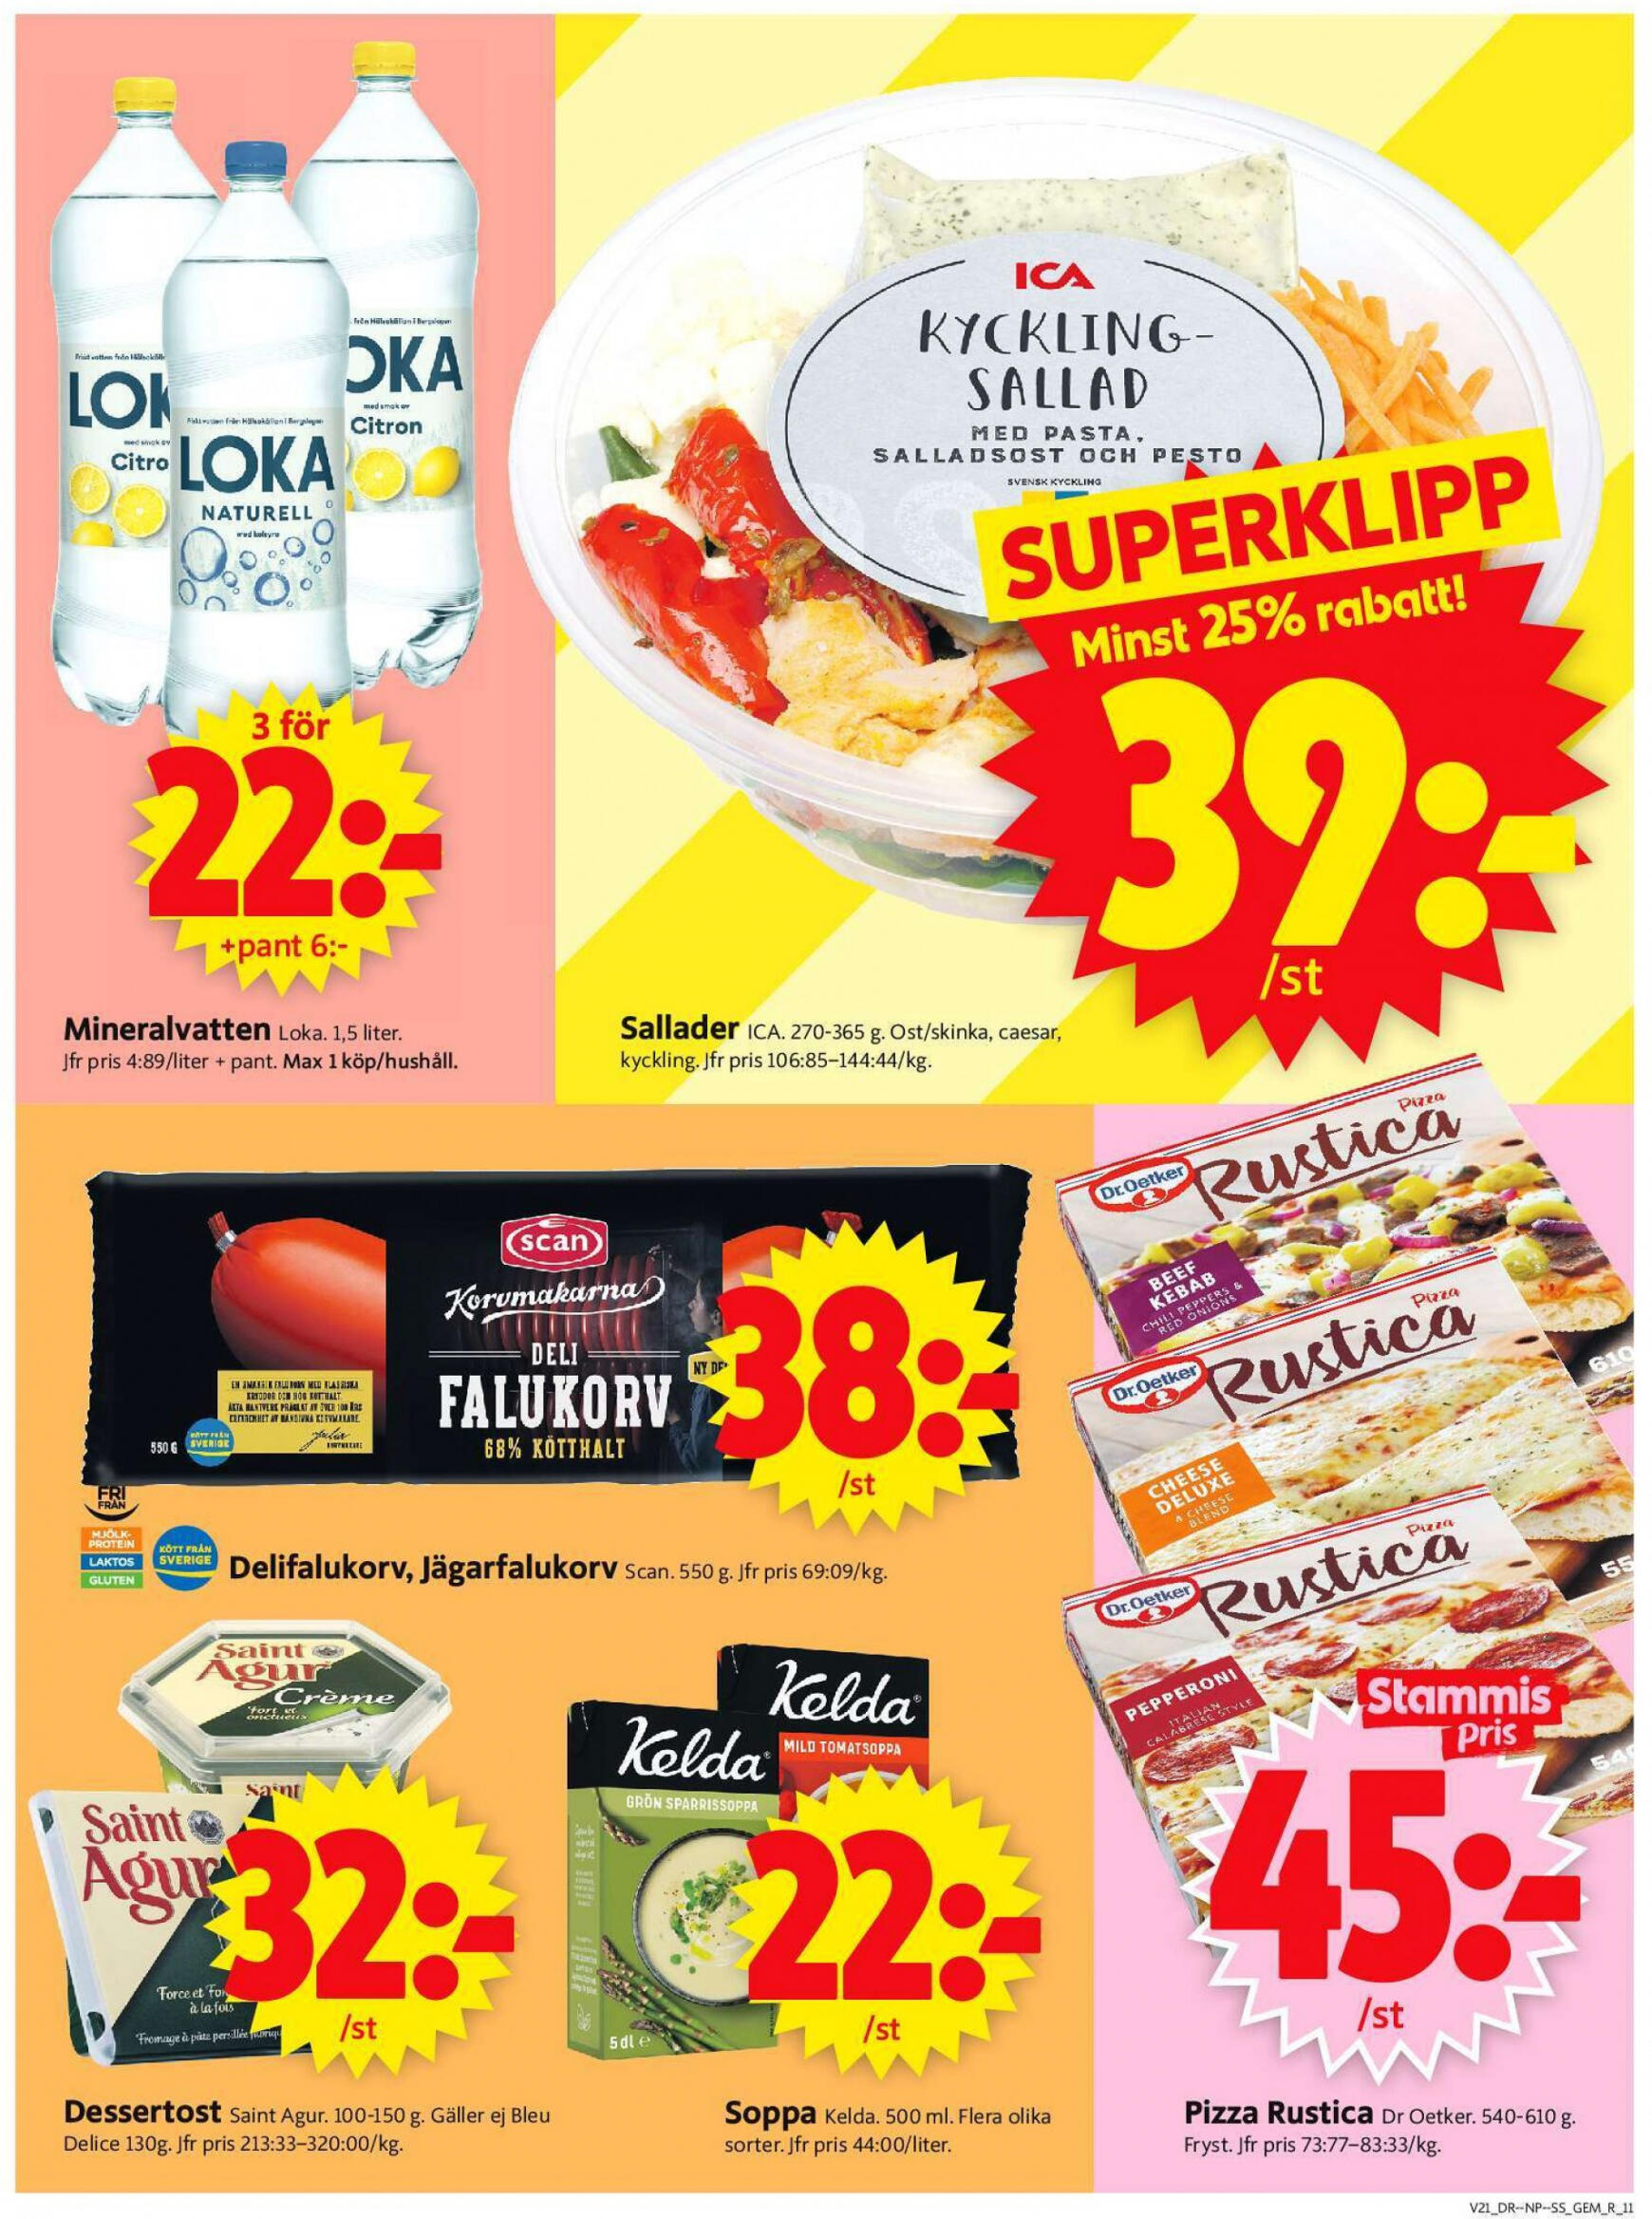 ica-supermarket - Flyer ICA Supermarket current 20.05. - 26.05. - page: 13